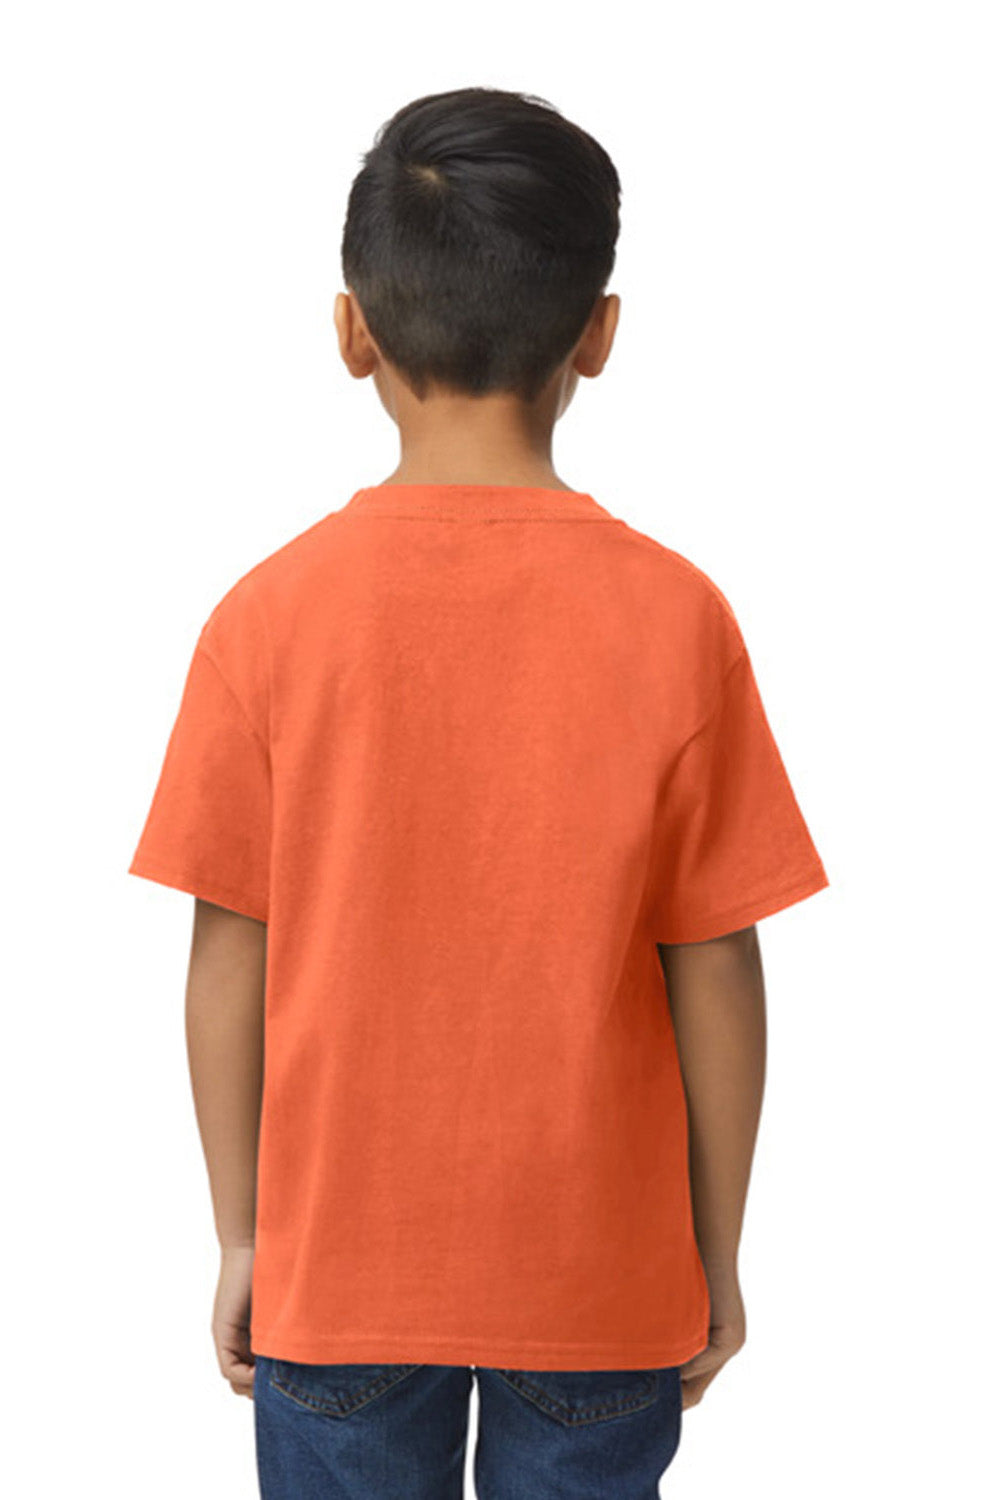 Gildan G650B Youth Softstyle Short Sleeve Crewneck T-Shirt Orange Back